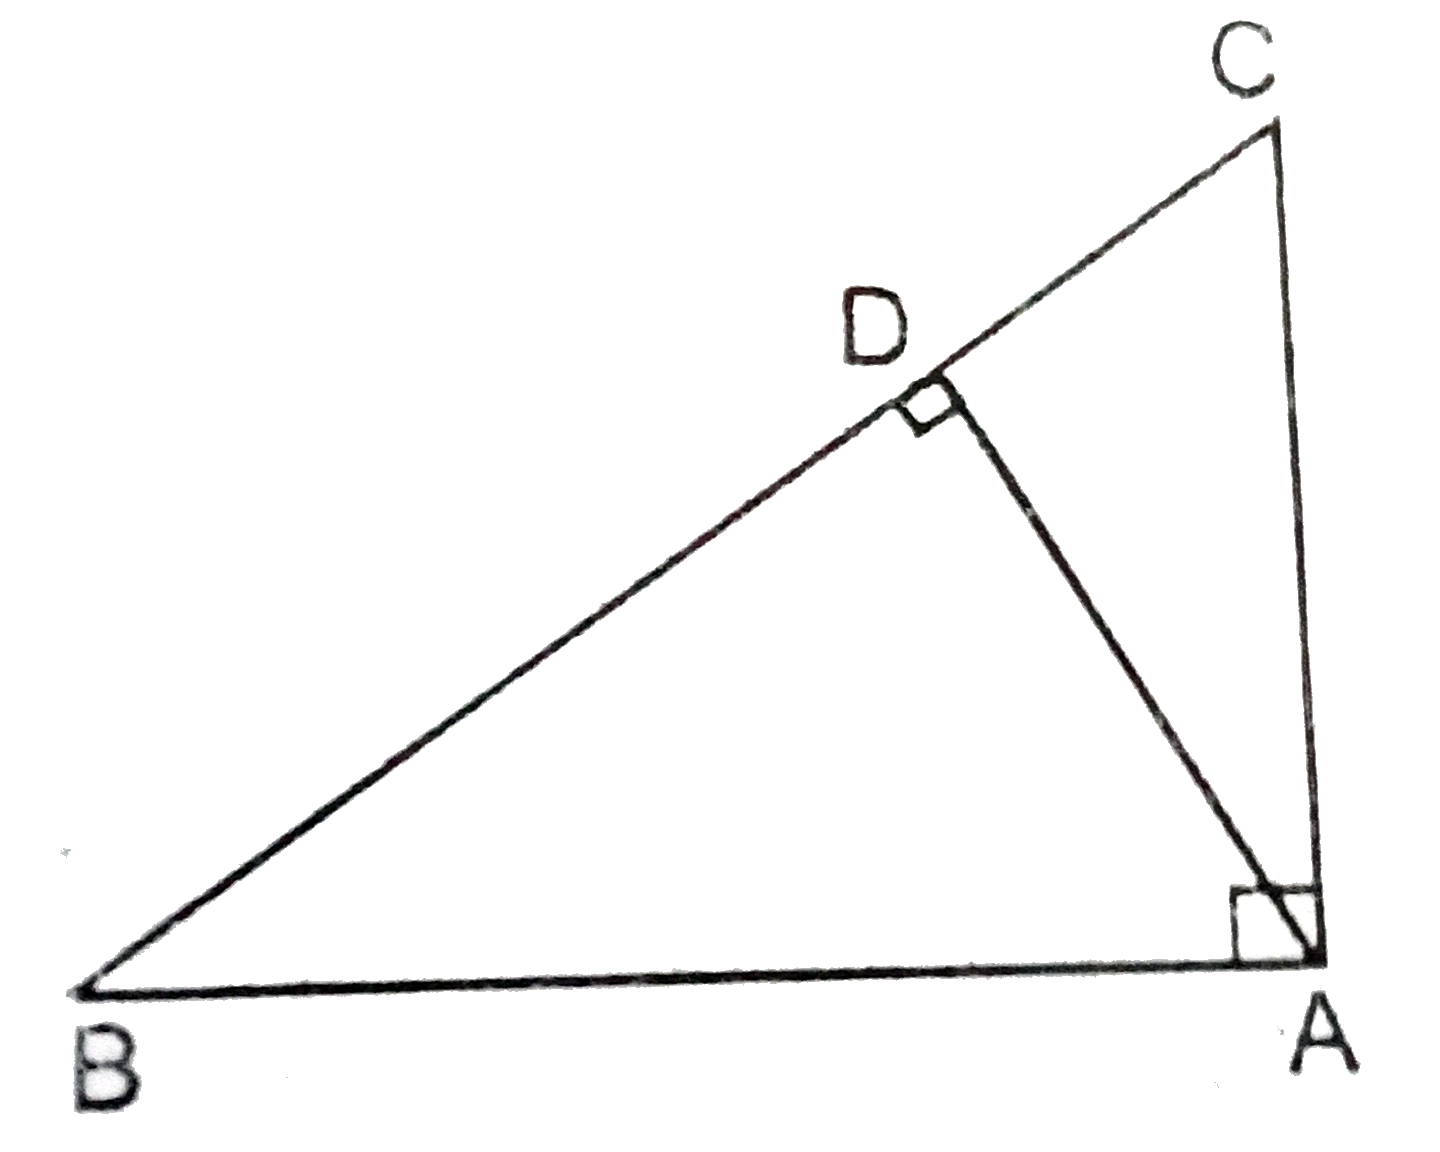 दिए गये चित्र में ABD एक समकोण त्रिभुज है जिसका angleA. समकोण है और ADbotBD, तो दिखाएँ कि   (i) AB^2=BC.BD   (ii) AC^2=BC.DC   (iii) AB.AC=BC.AD